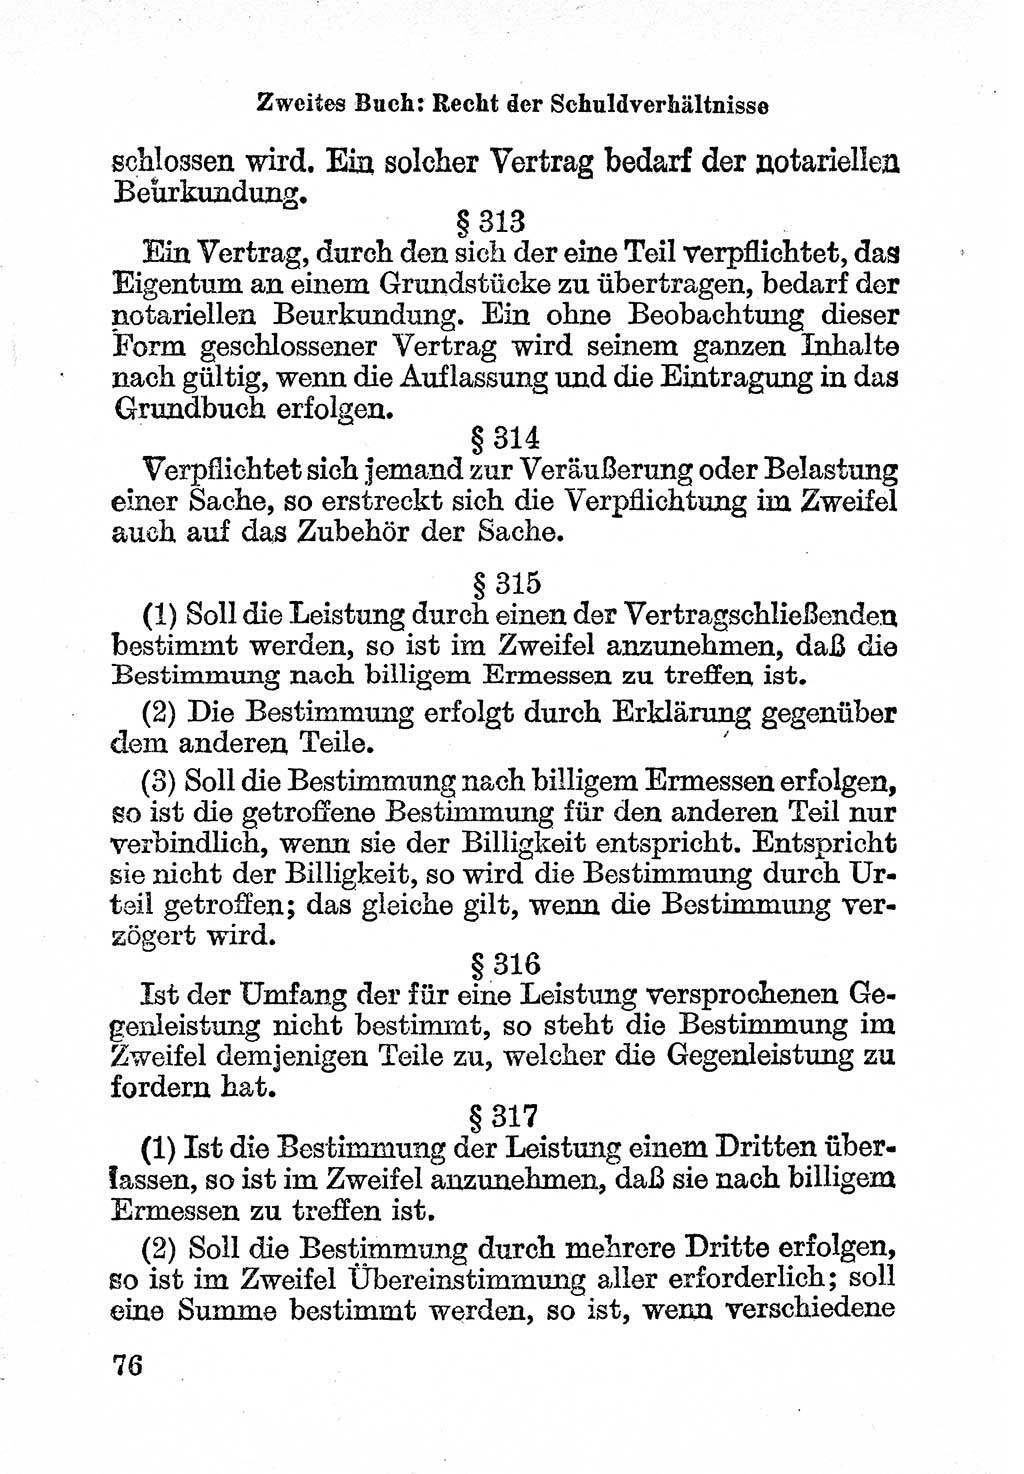 Bürgerliches Gesetzbuch (BGB) nebst wichtigen Nebengesetzen [Deutsche Demokratische Republik (DDR)] 1956, Seite 76 (BGB Nebenges. DDR 1956, S. 76)